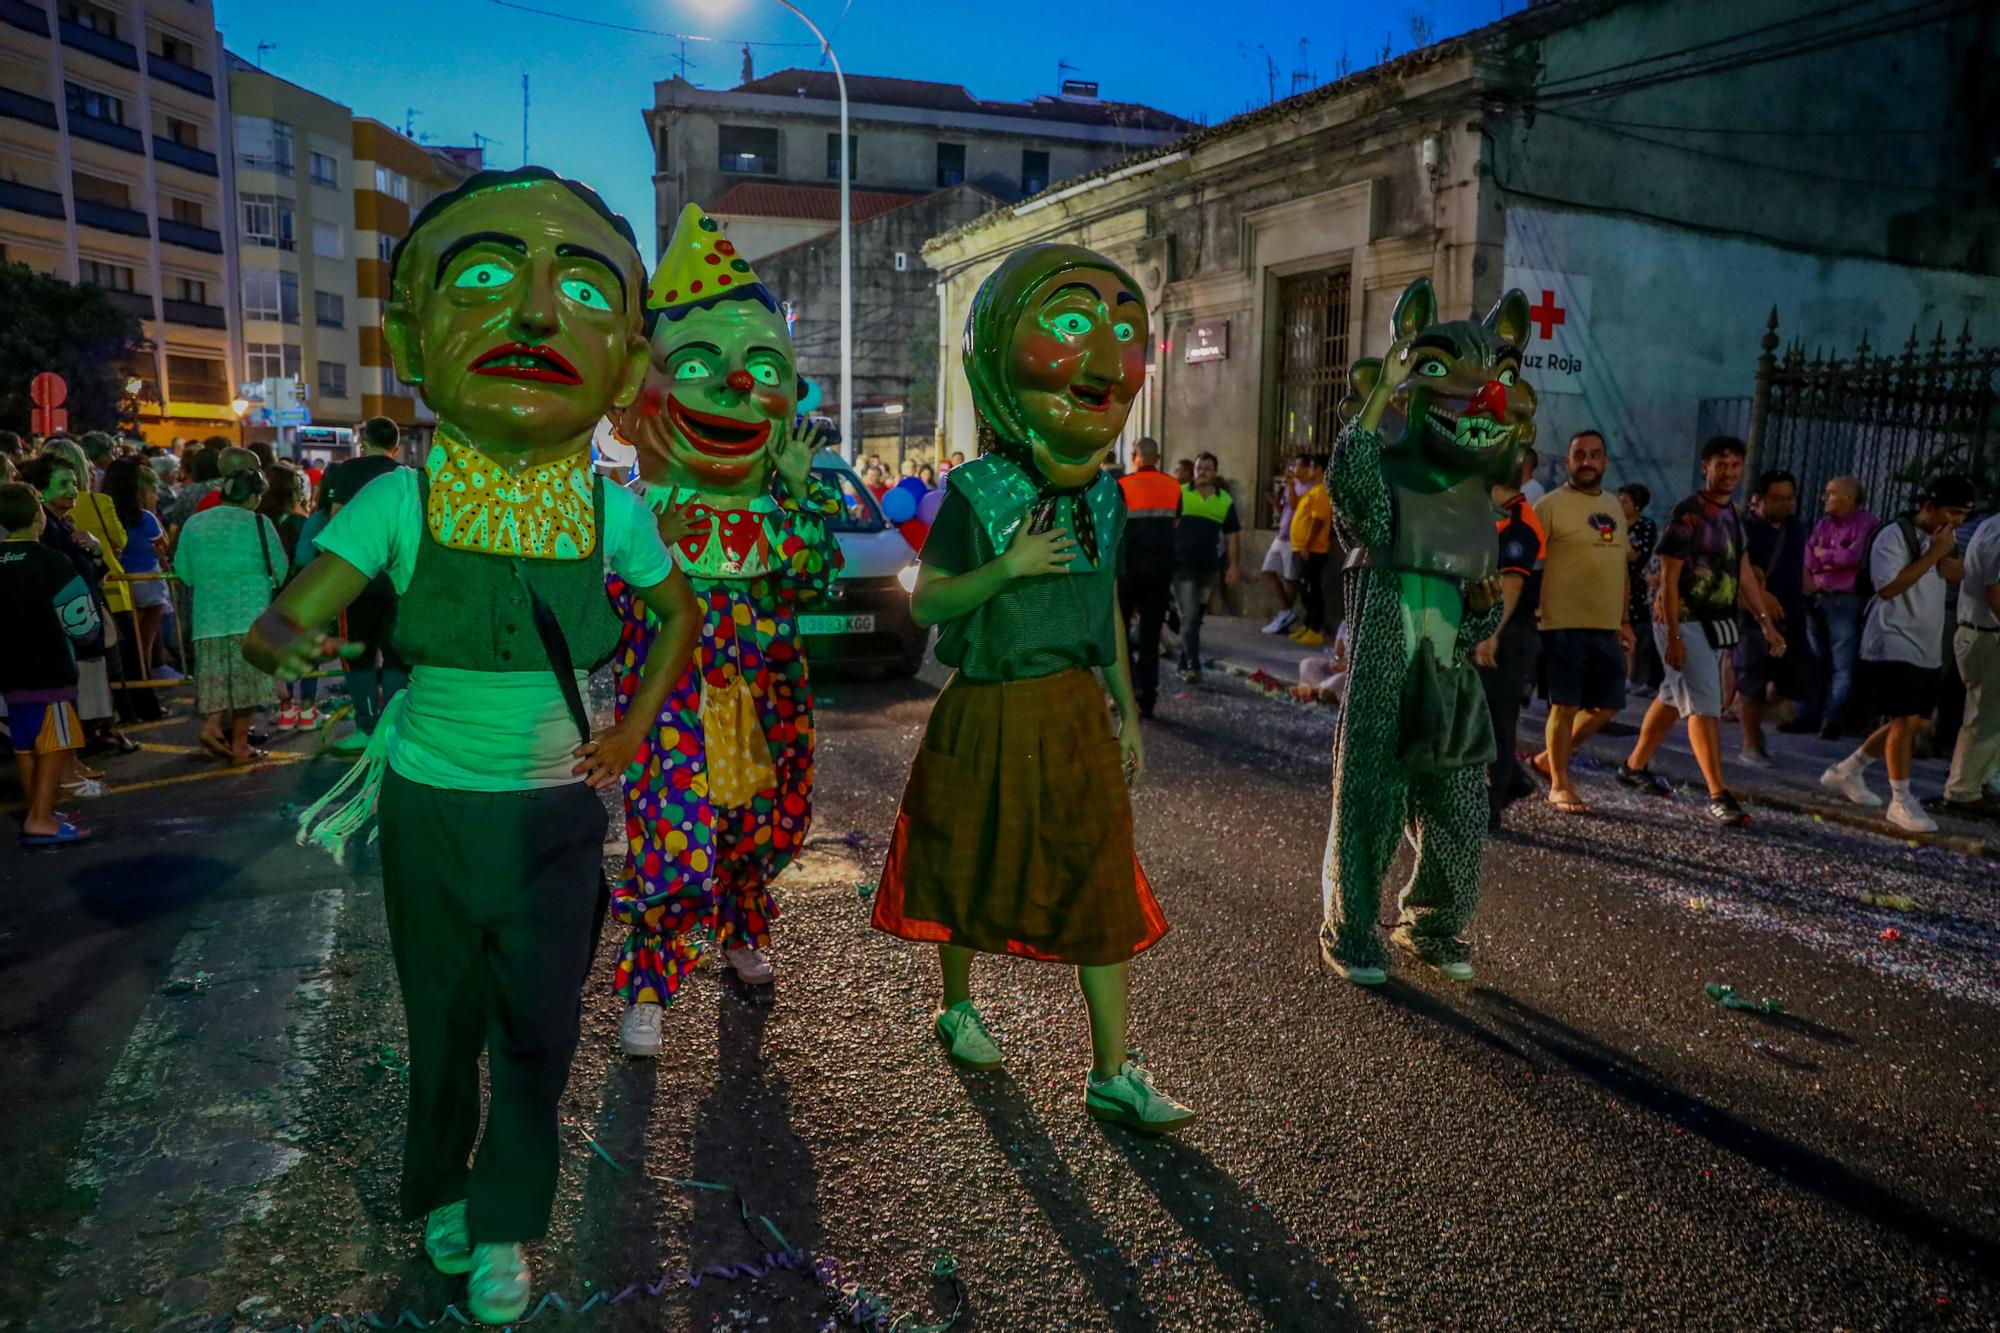 Así transcurrió el desfile de carrozas que sirvió de colofón a la fiesta de San Roque 2023, en Vilagarcía.